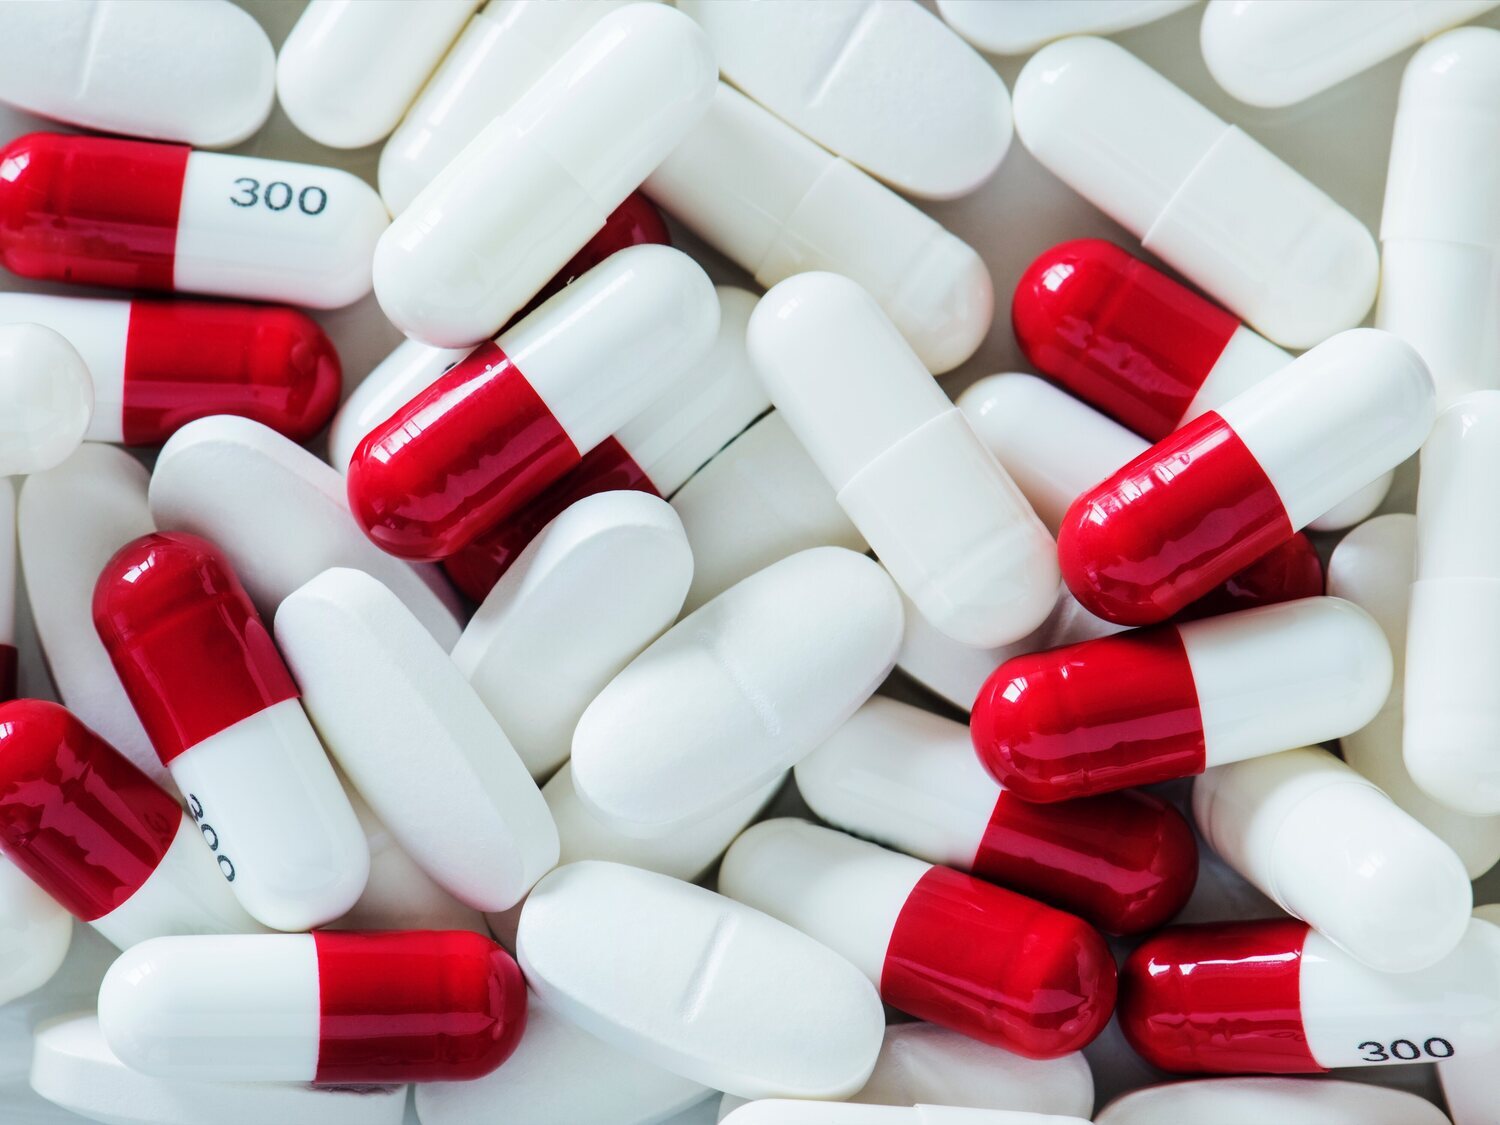 Alerta sanitaria: piden retirar estos populares medicamentos de todas las farmacias por alto riesgo para la salud